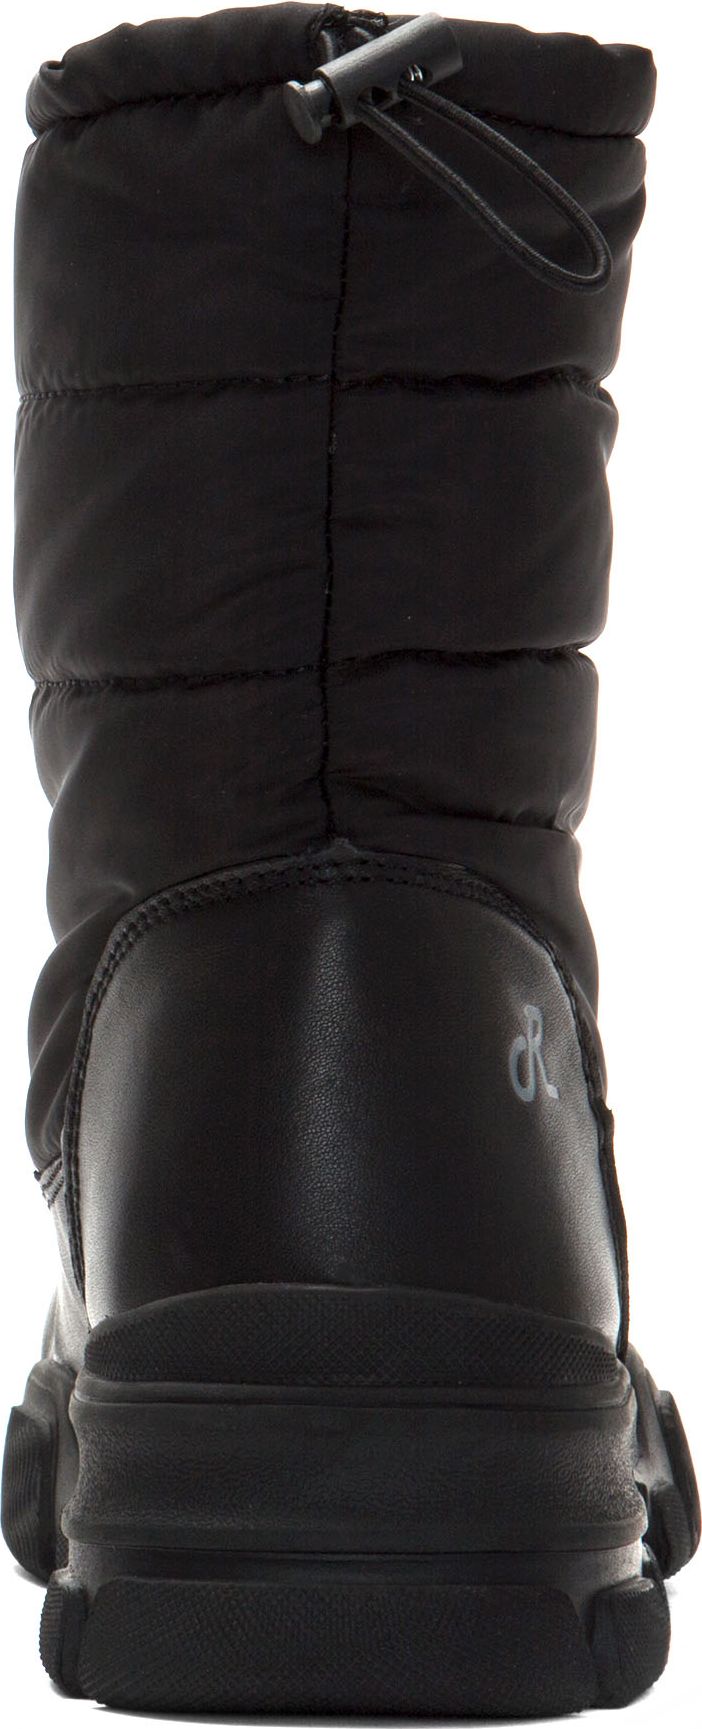 Religious Comfort Boots Frozen Vanilla Black